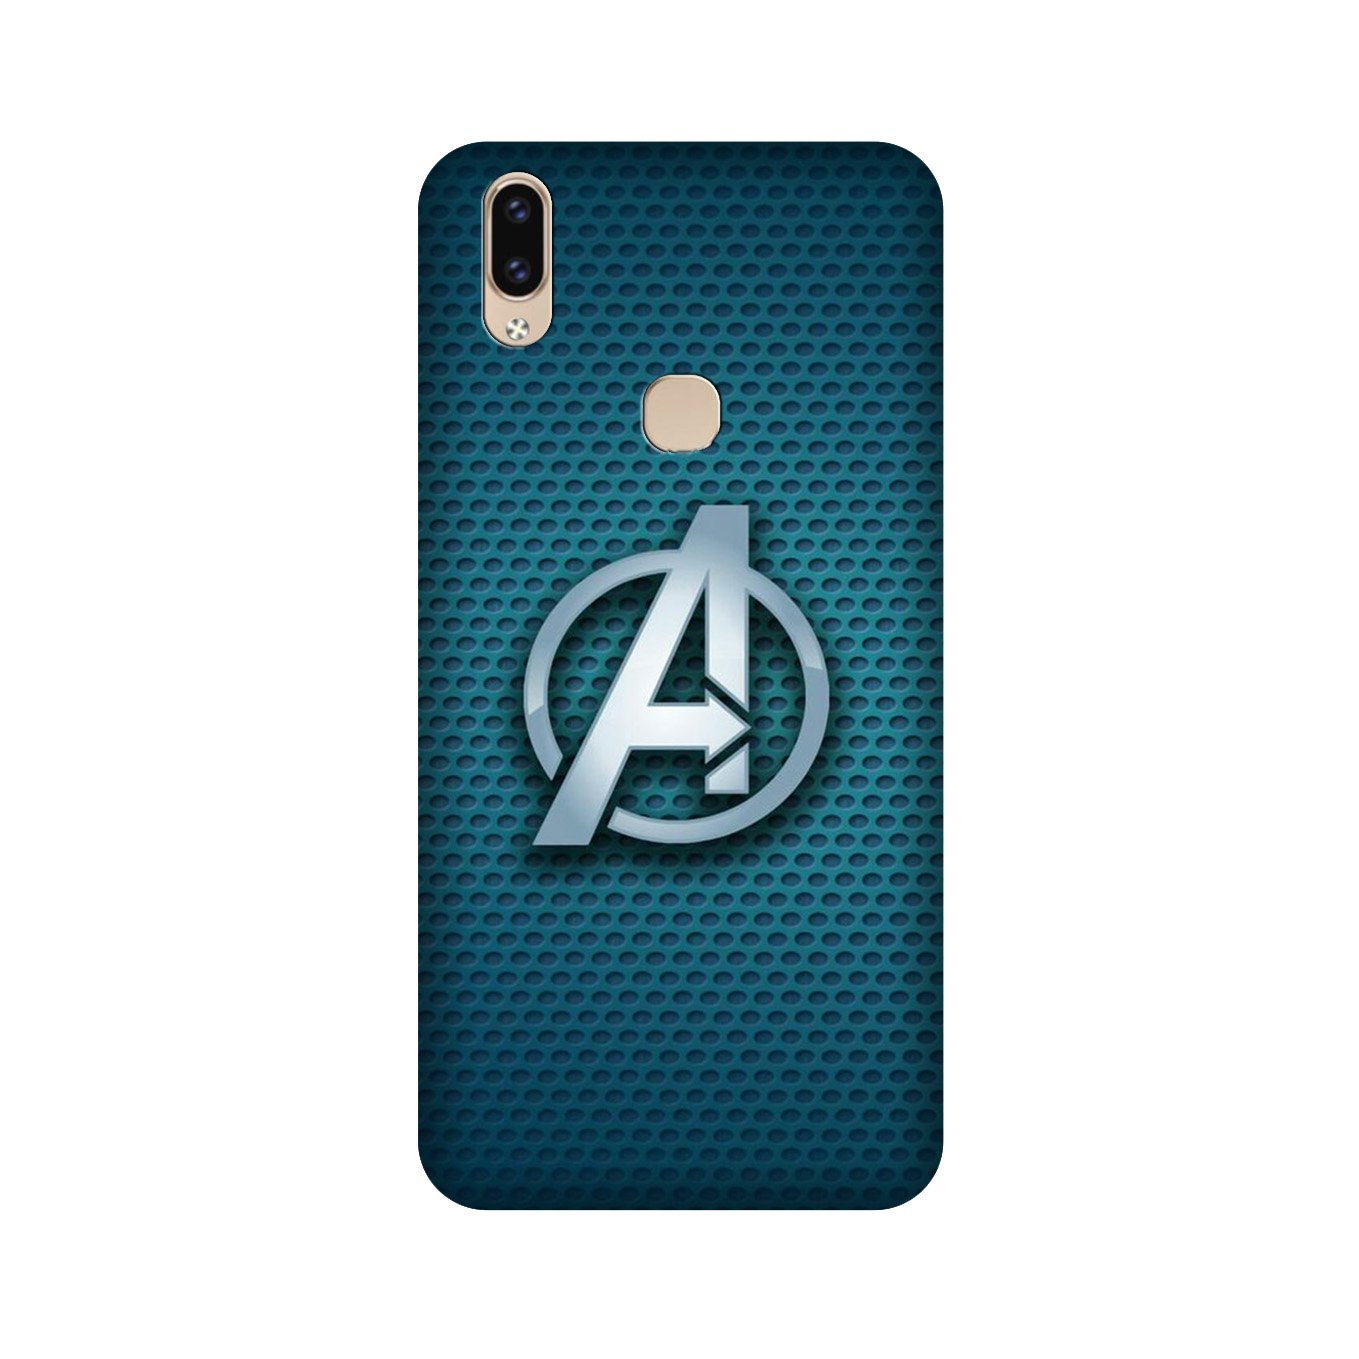 Avengers Case for Vivo V9 pro (Design No. 246)